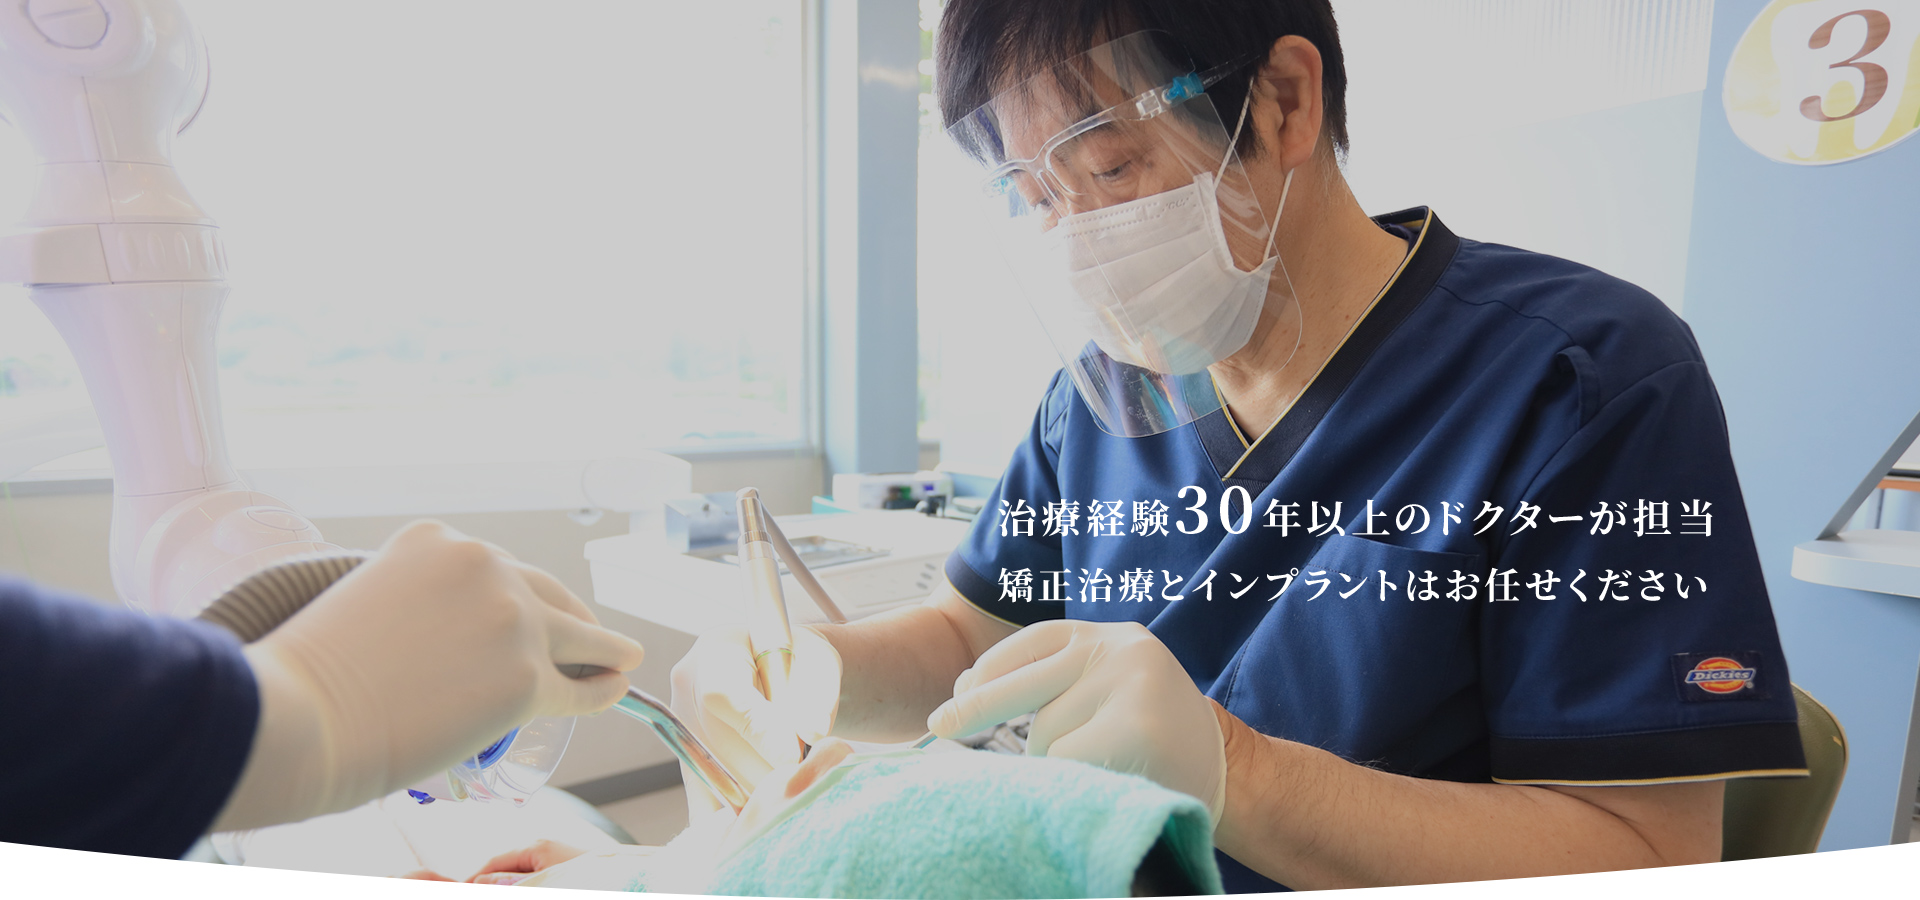 小野歯科医院